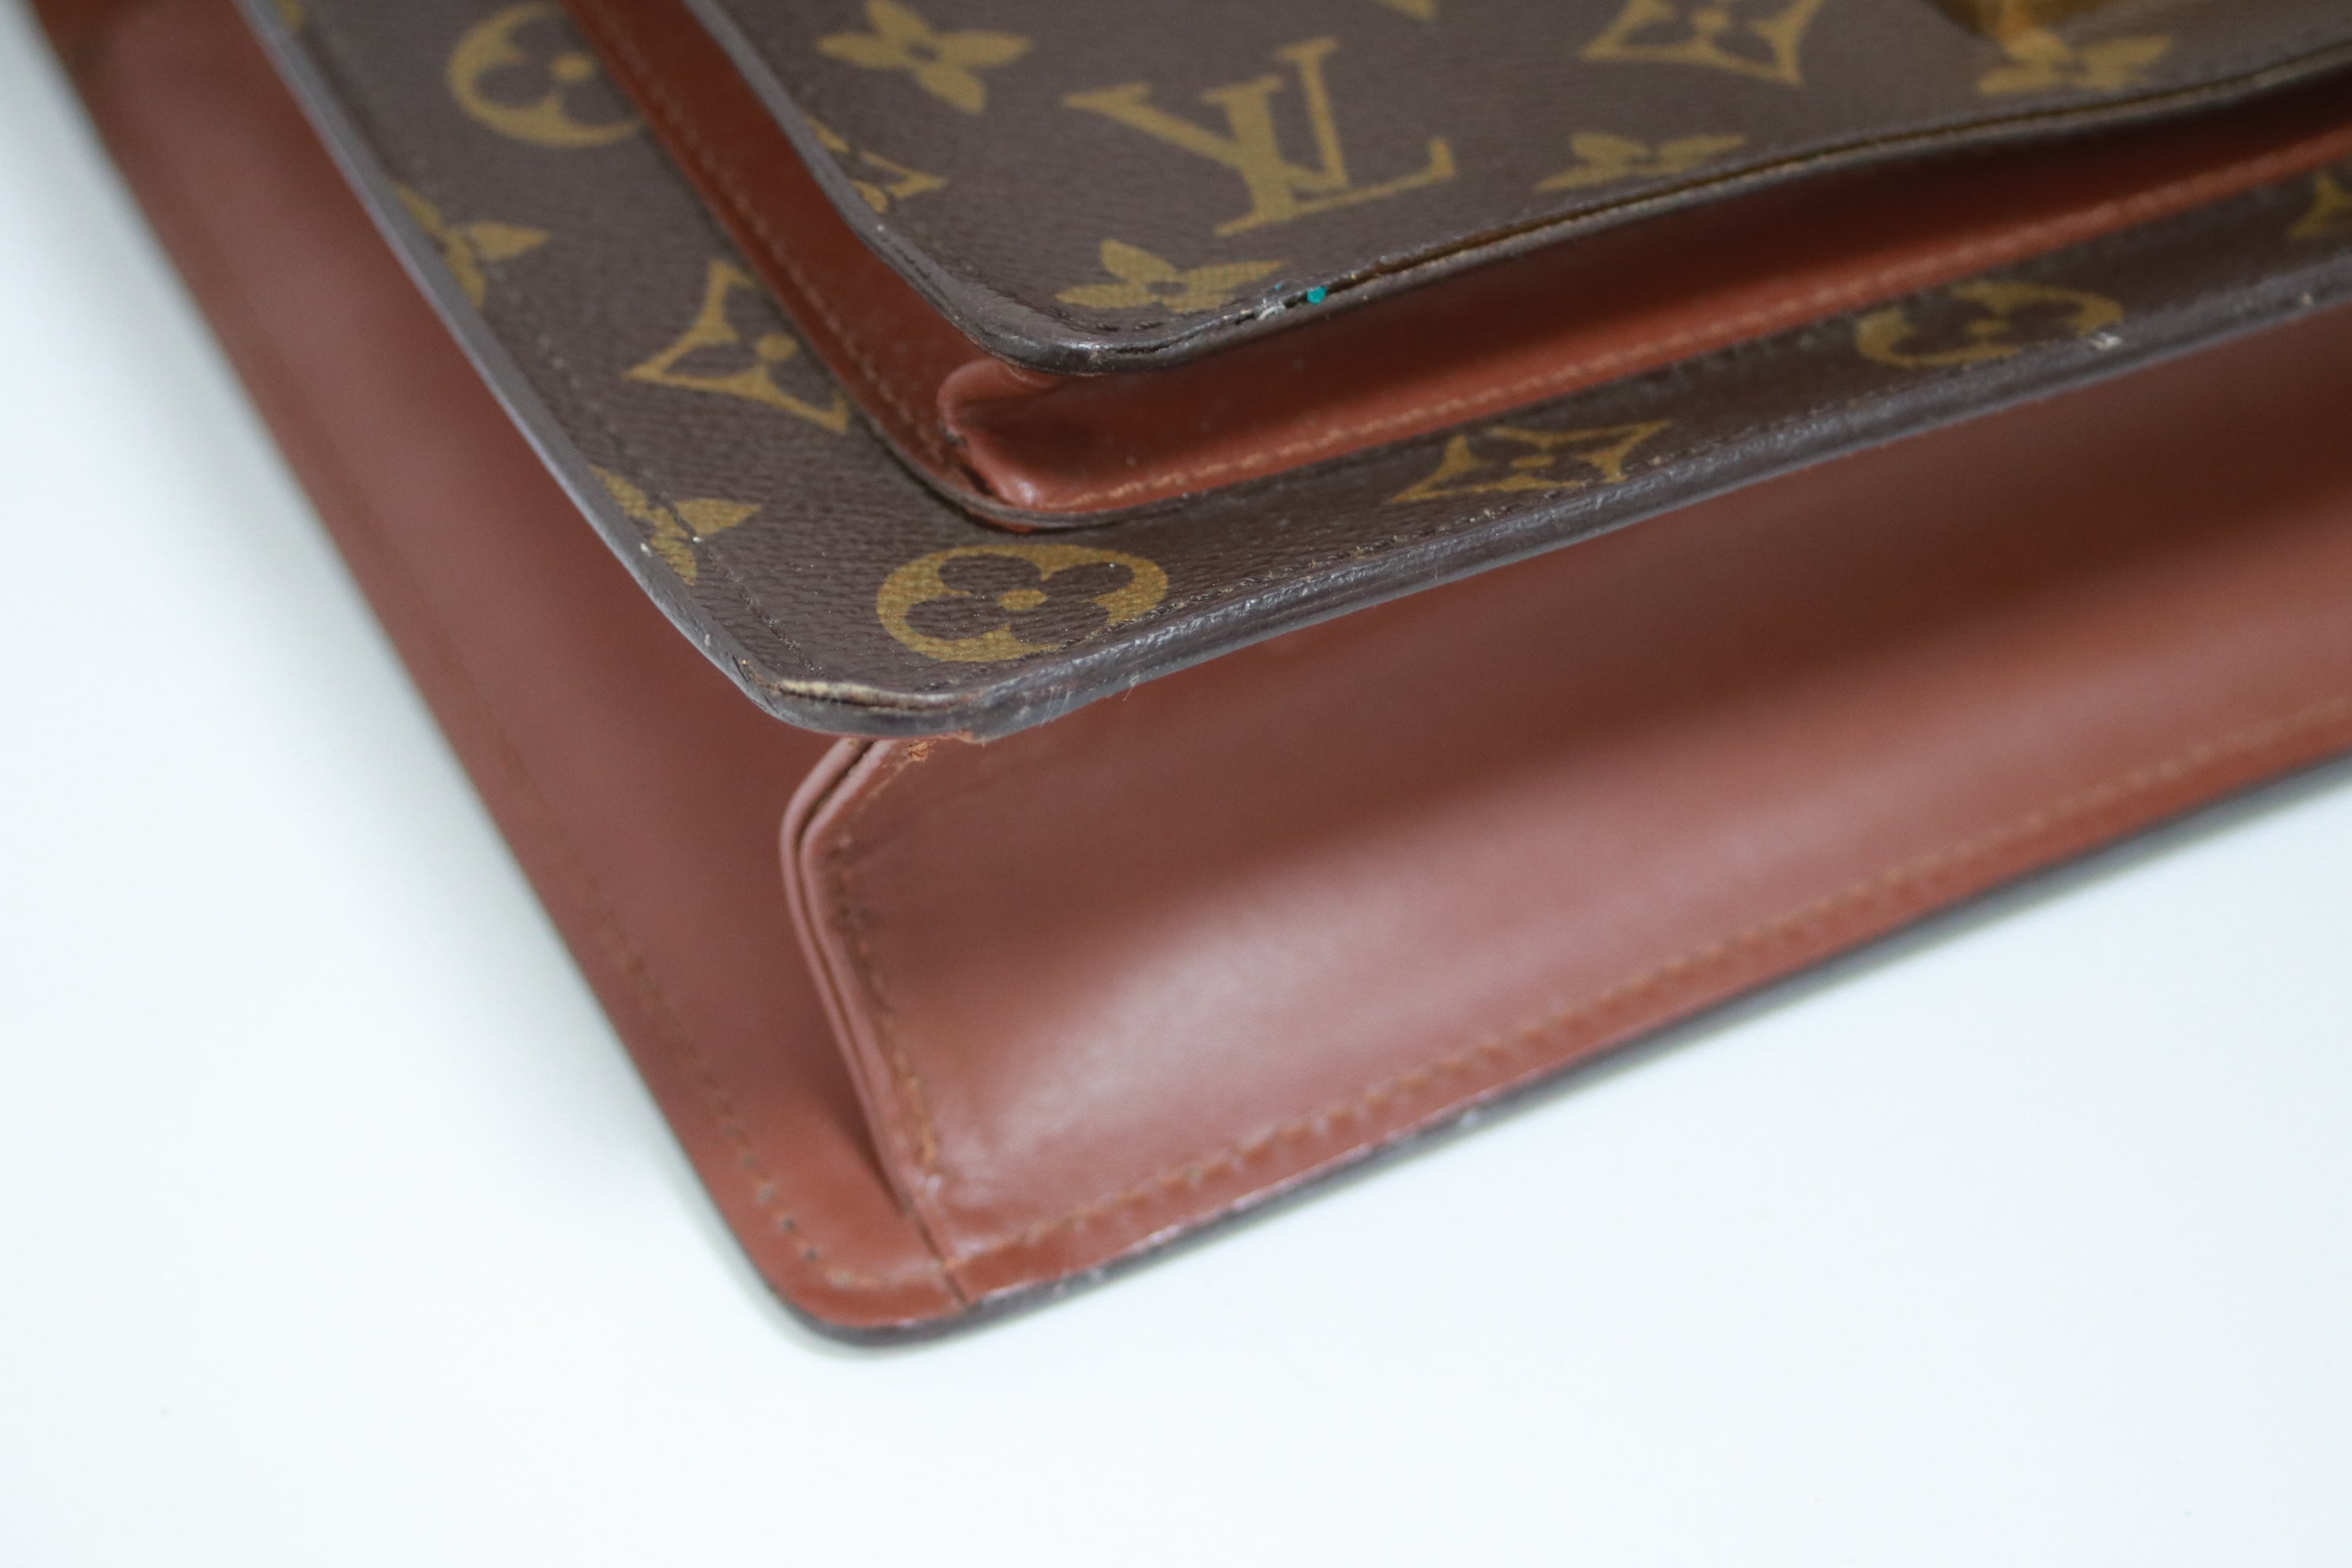 Louis Vuitton Monceau 28 Shoulder Bag Used (7216)